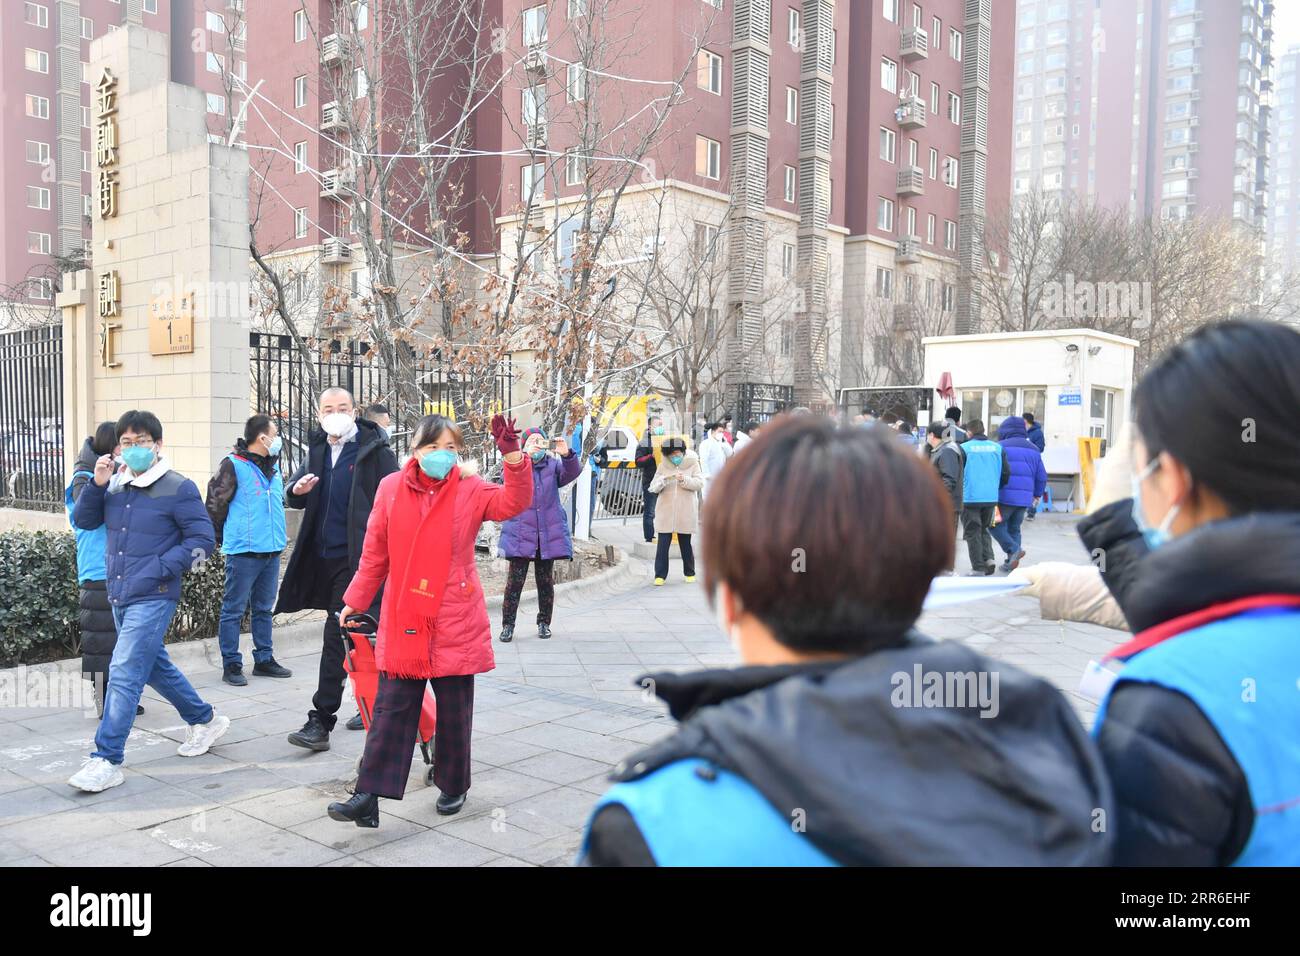 210210 -- BEIJING, le 10 février 2021 -- les résidents expriment leur gratitude en saluant les travailleurs communautaires en sortant de la communauté de Ronghui dans le district de Daxing à Beijing, capitale de la Chine, le 10 février 2021. Pékin a nettoyé toutes les zones présentant des risques moyens et élevés d’infection par le COVID-19, selon une conférence de presse tenue mardi. Mardi, la communauté résidentielle de Ronghui a été déclassée en zone à faible risque. Actuellement, toutes les zones de Pékin sont des zones à faible risque d’infection au COVID-19. CHINE-PÉKIN-DAXING-COVID-19-NIVEAU DE RISQUE-DÉCLASSEMENT DU CN SUNXRUIBO PUBLICATIONXNOTXINXCHN Banque D'Images